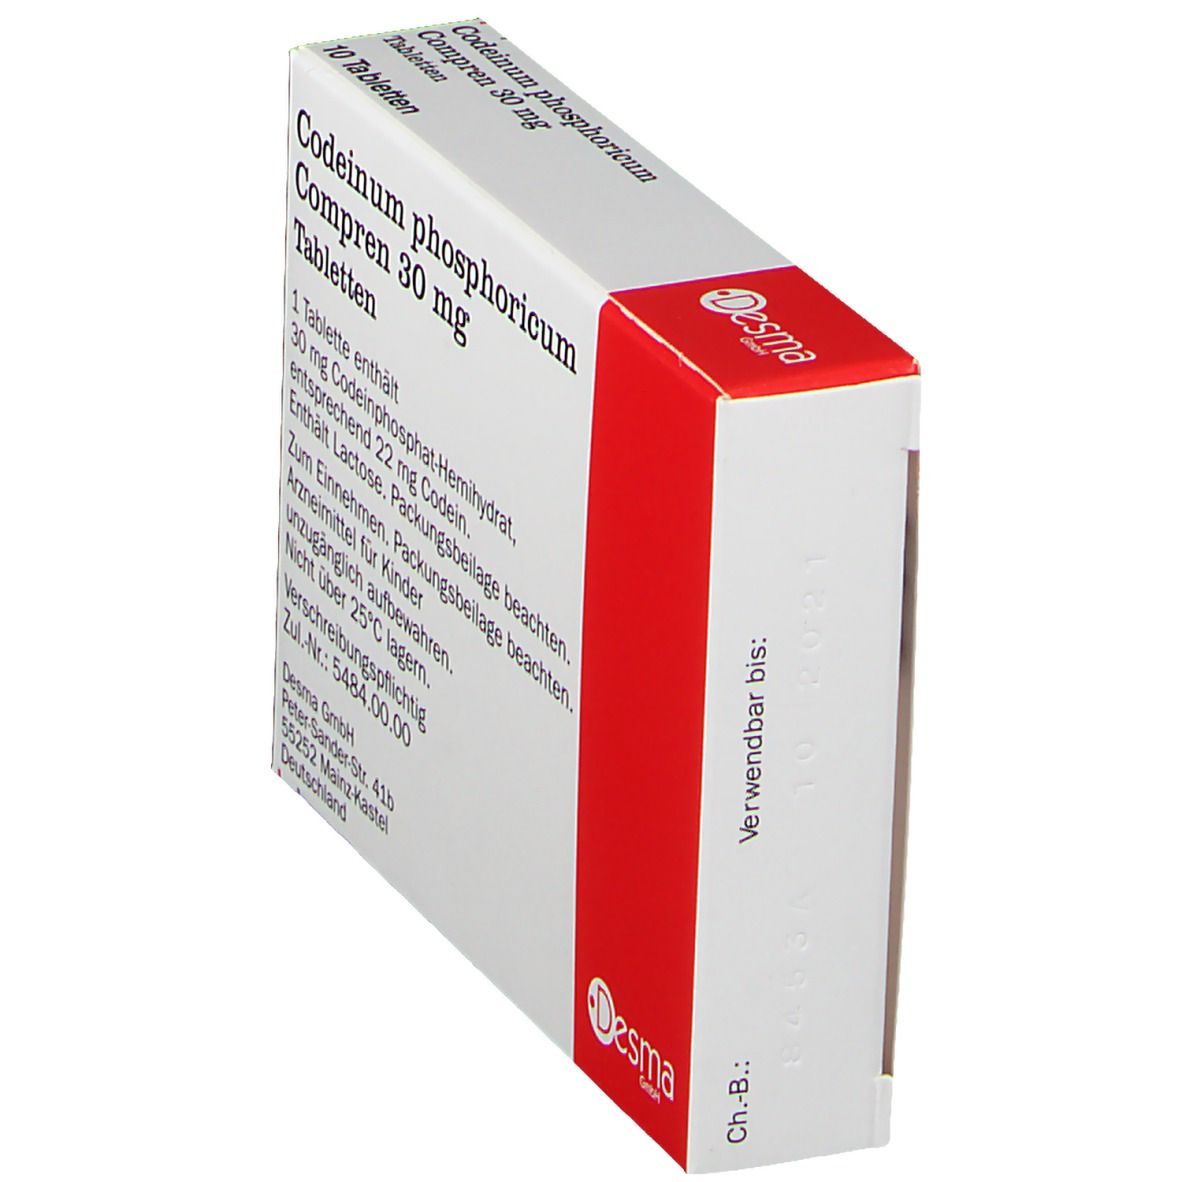 Codeinum phosphoricum Compren 30 mg